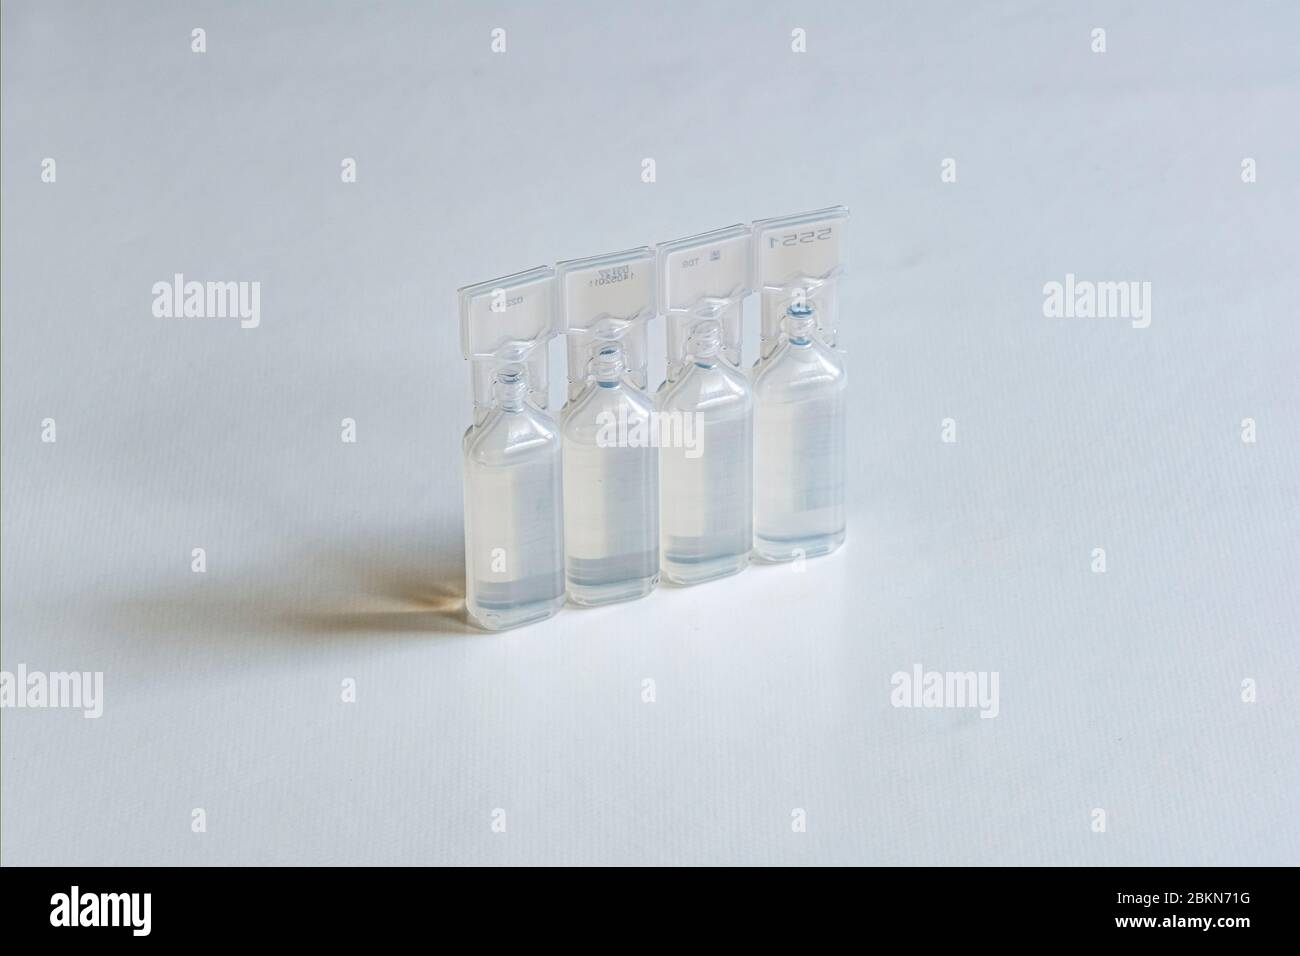 Una confezione di quattro piccoli contenitori, riempita con soluzione di clucosio per iniezione, riportata su una tabella bianca Foto Stock